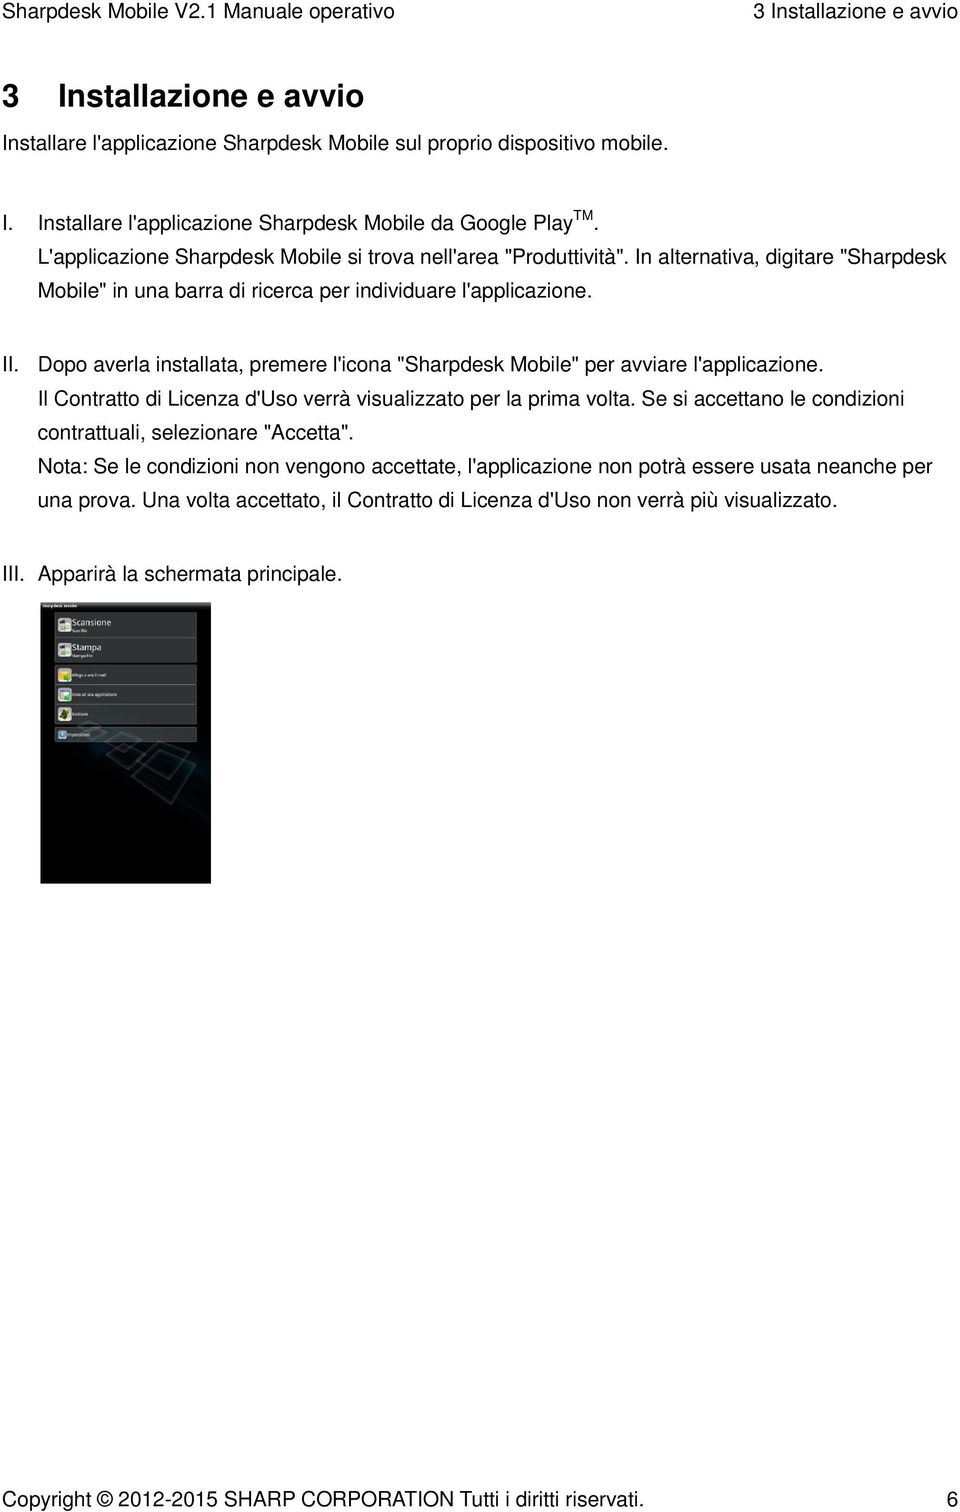 Dopo averla installata, premere l'icona "Sharpdesk Mobile" per avviare l'applicazione. Il Contratto di Licenza d'uso verrà visualizzato per la prima volta.